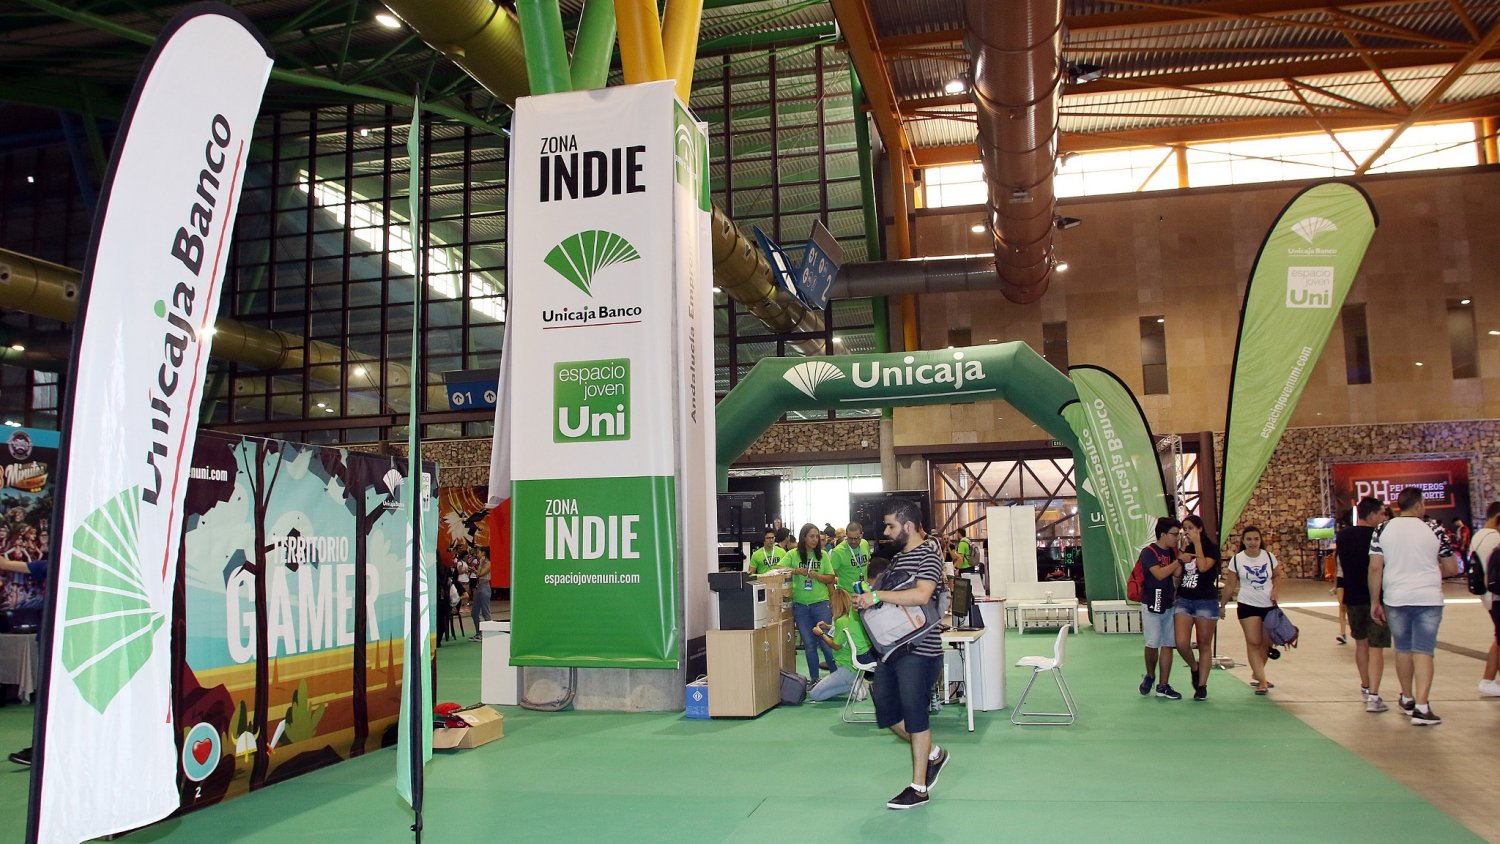 Unicaja Banco participa un año más en Gamepolis con el patrocinio de una Zona Indie